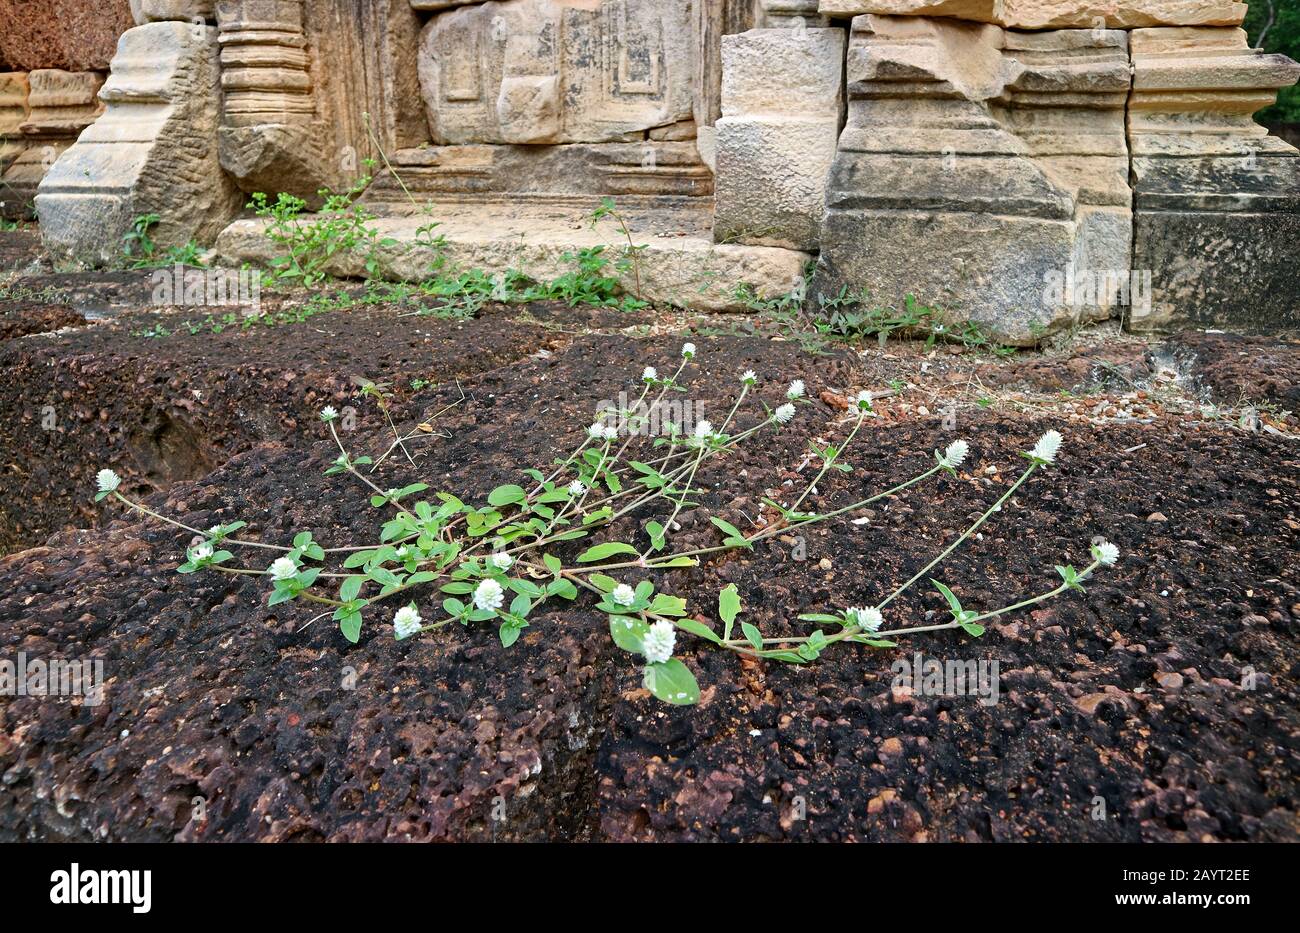 White Globe Amaranth Fiori Che Crescono sulla Terra Di Arenaria dell'antico Tempio Khmer Foto Stock